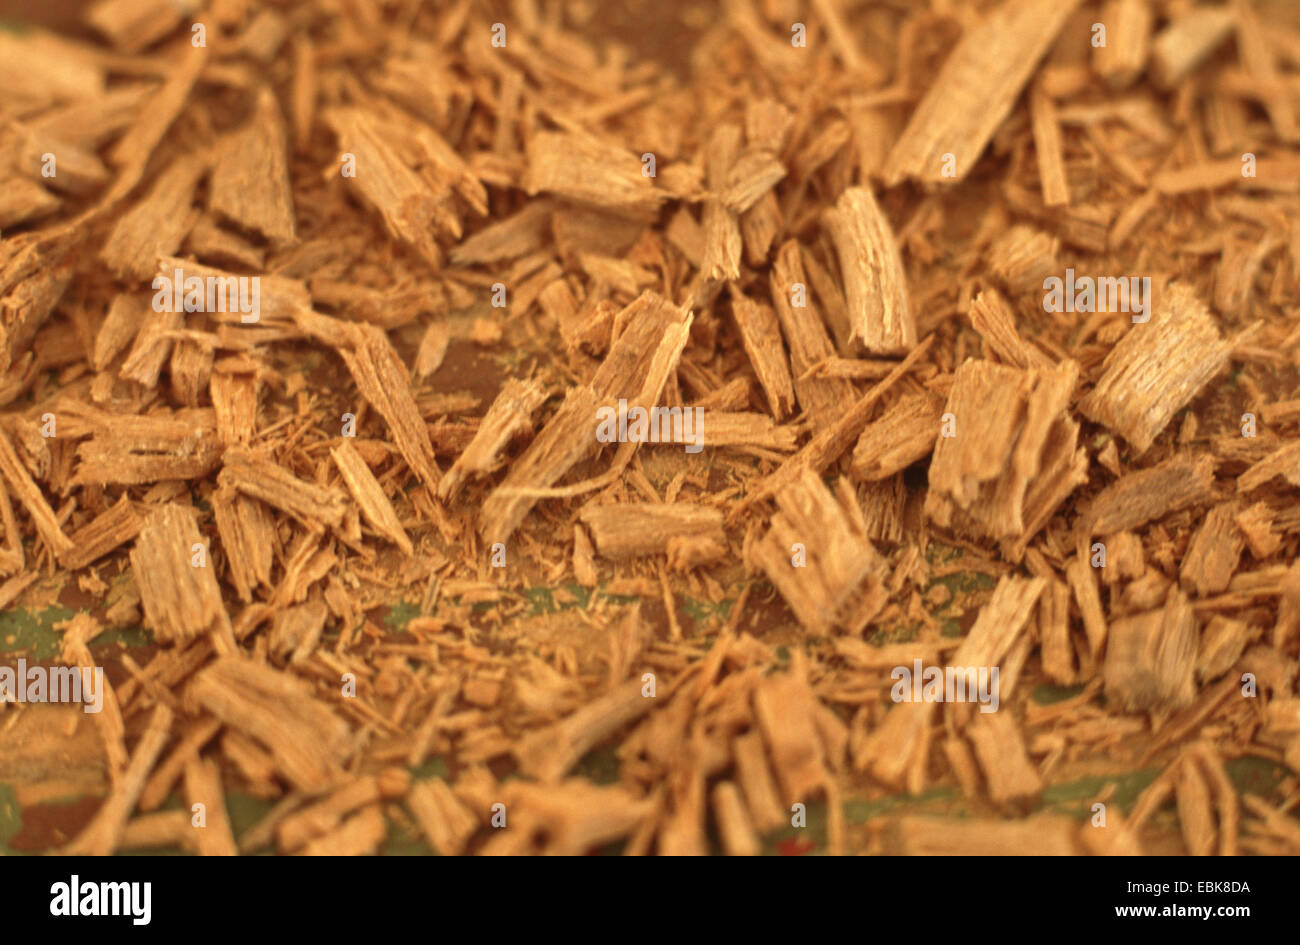 White sandalwood, Indian sandalwood (Santalum album), shredded wood Stock Photo